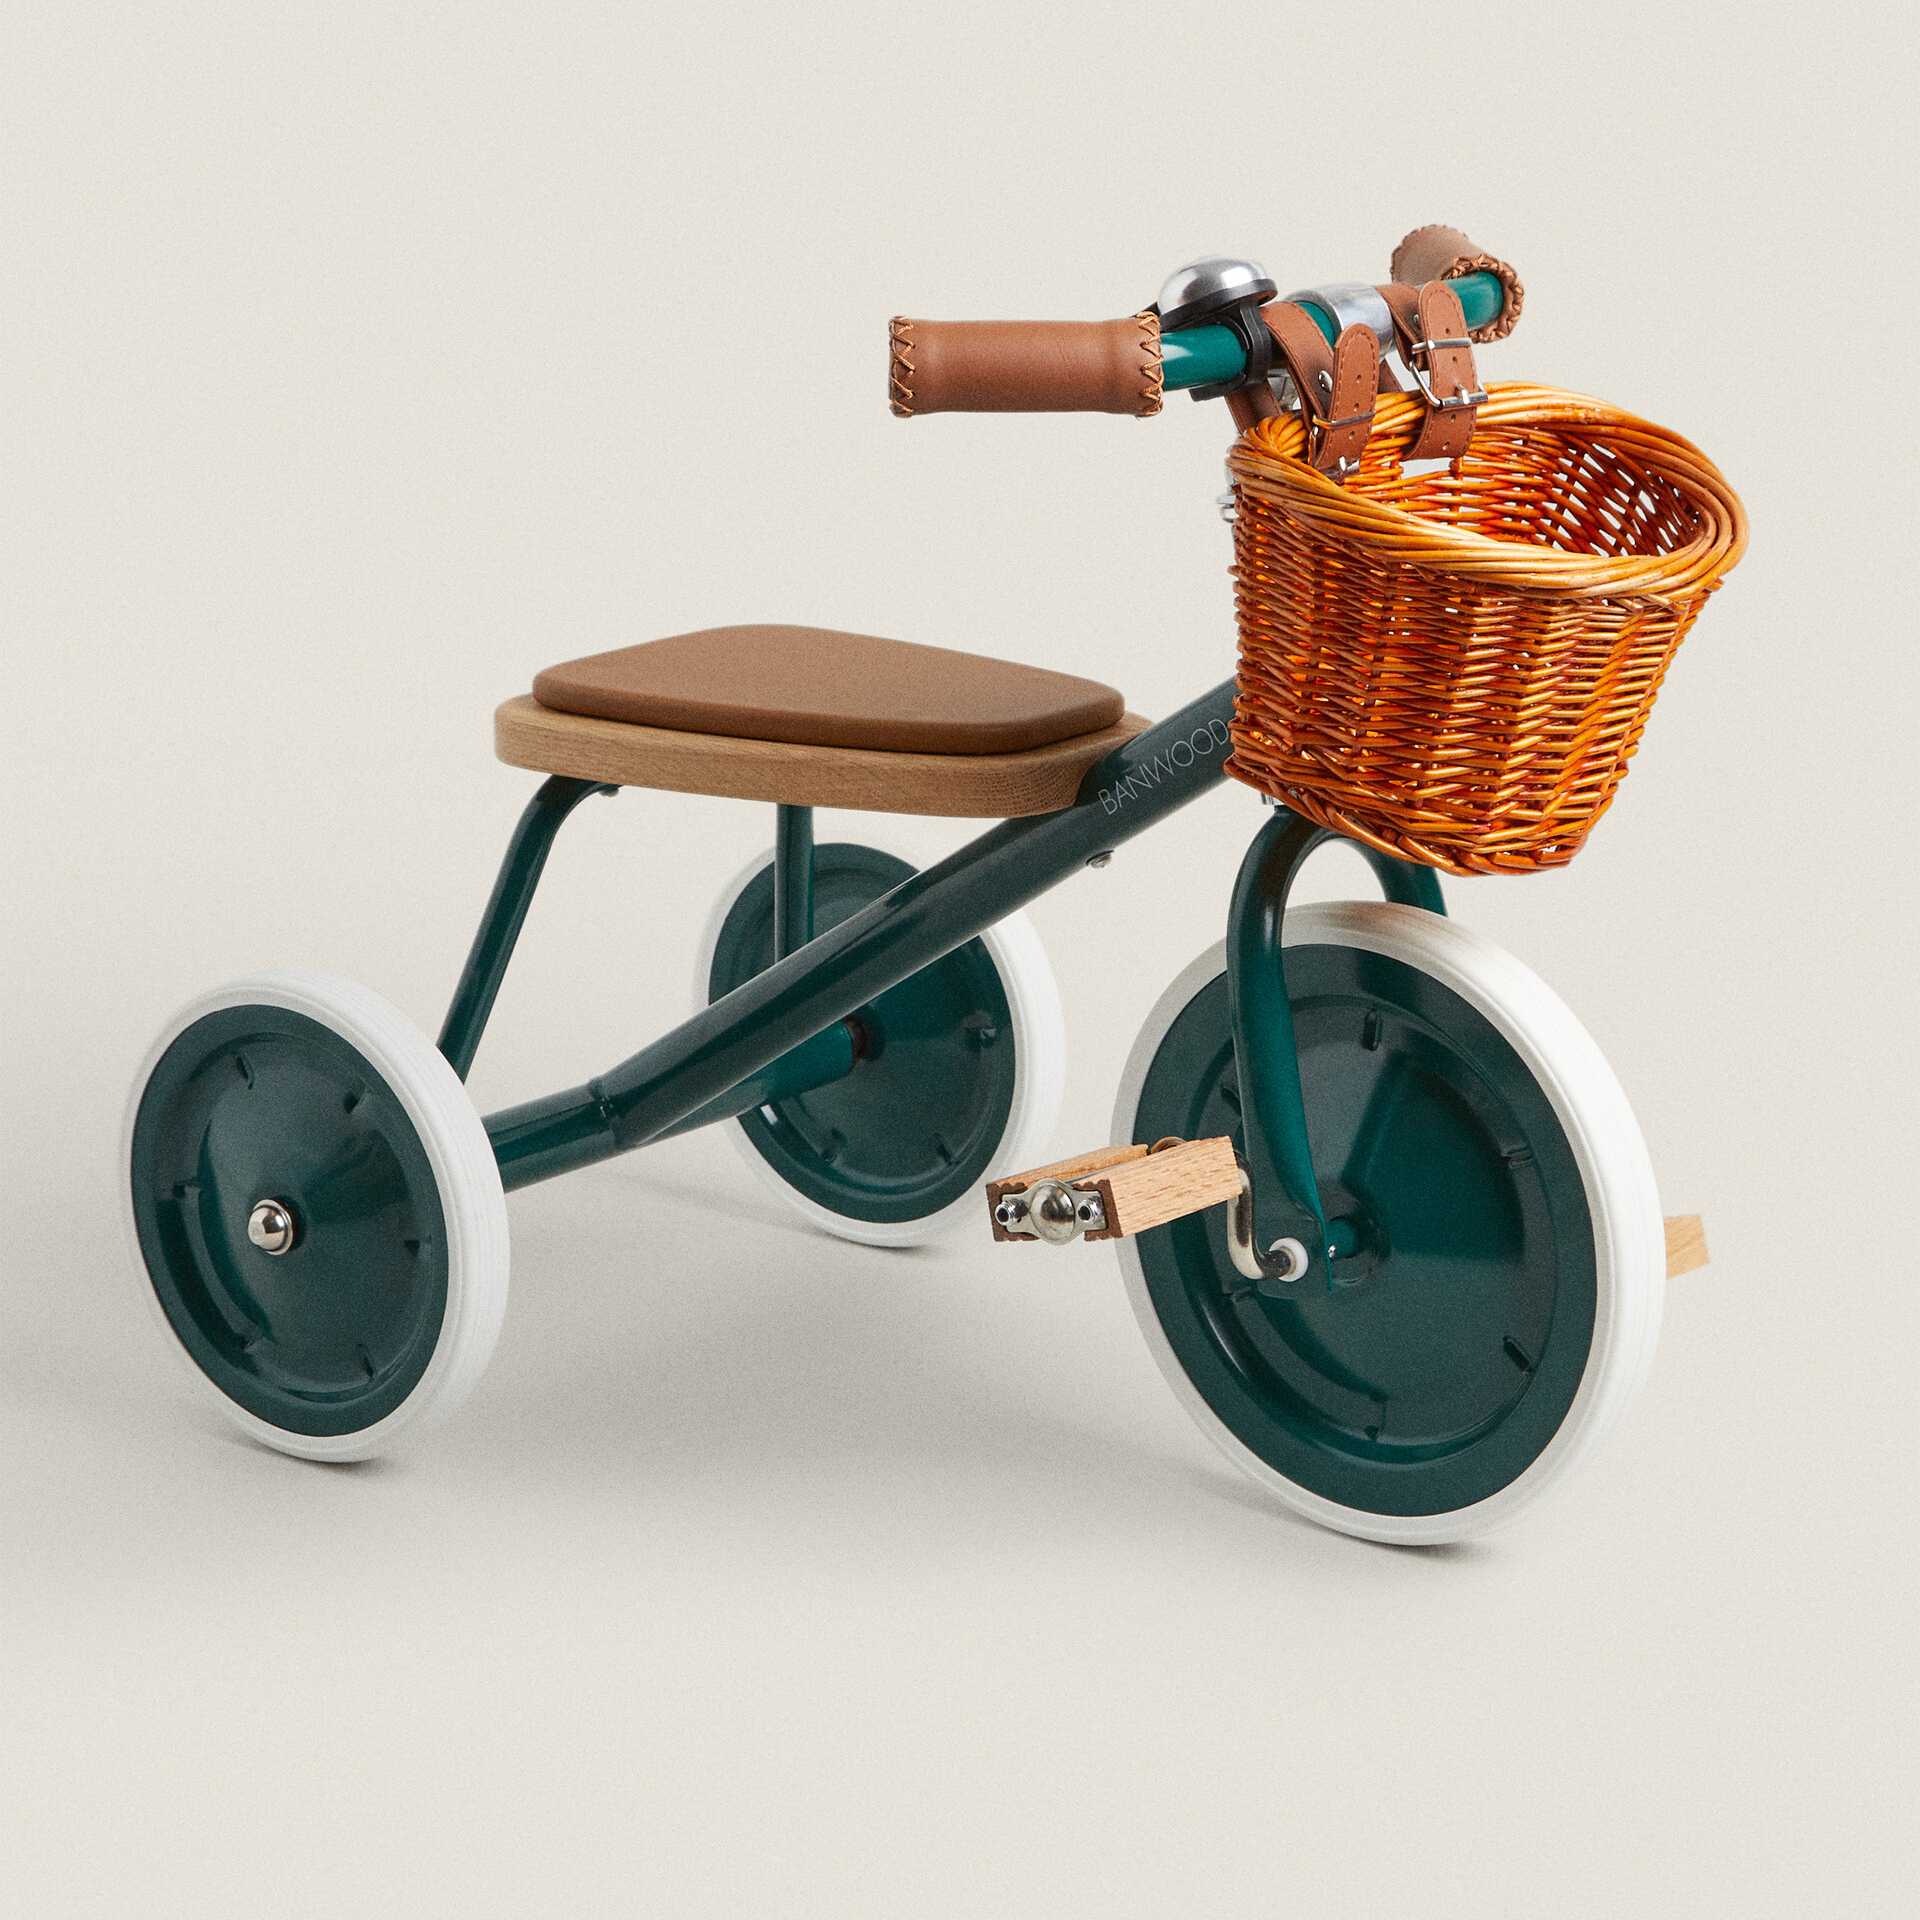 Детский велосипед Zara Home Banwood, зеленый детский балансирующий велосипед портативный детский велосипед коляска трехколесный велосипед скутер обучающая прогулка с педалями